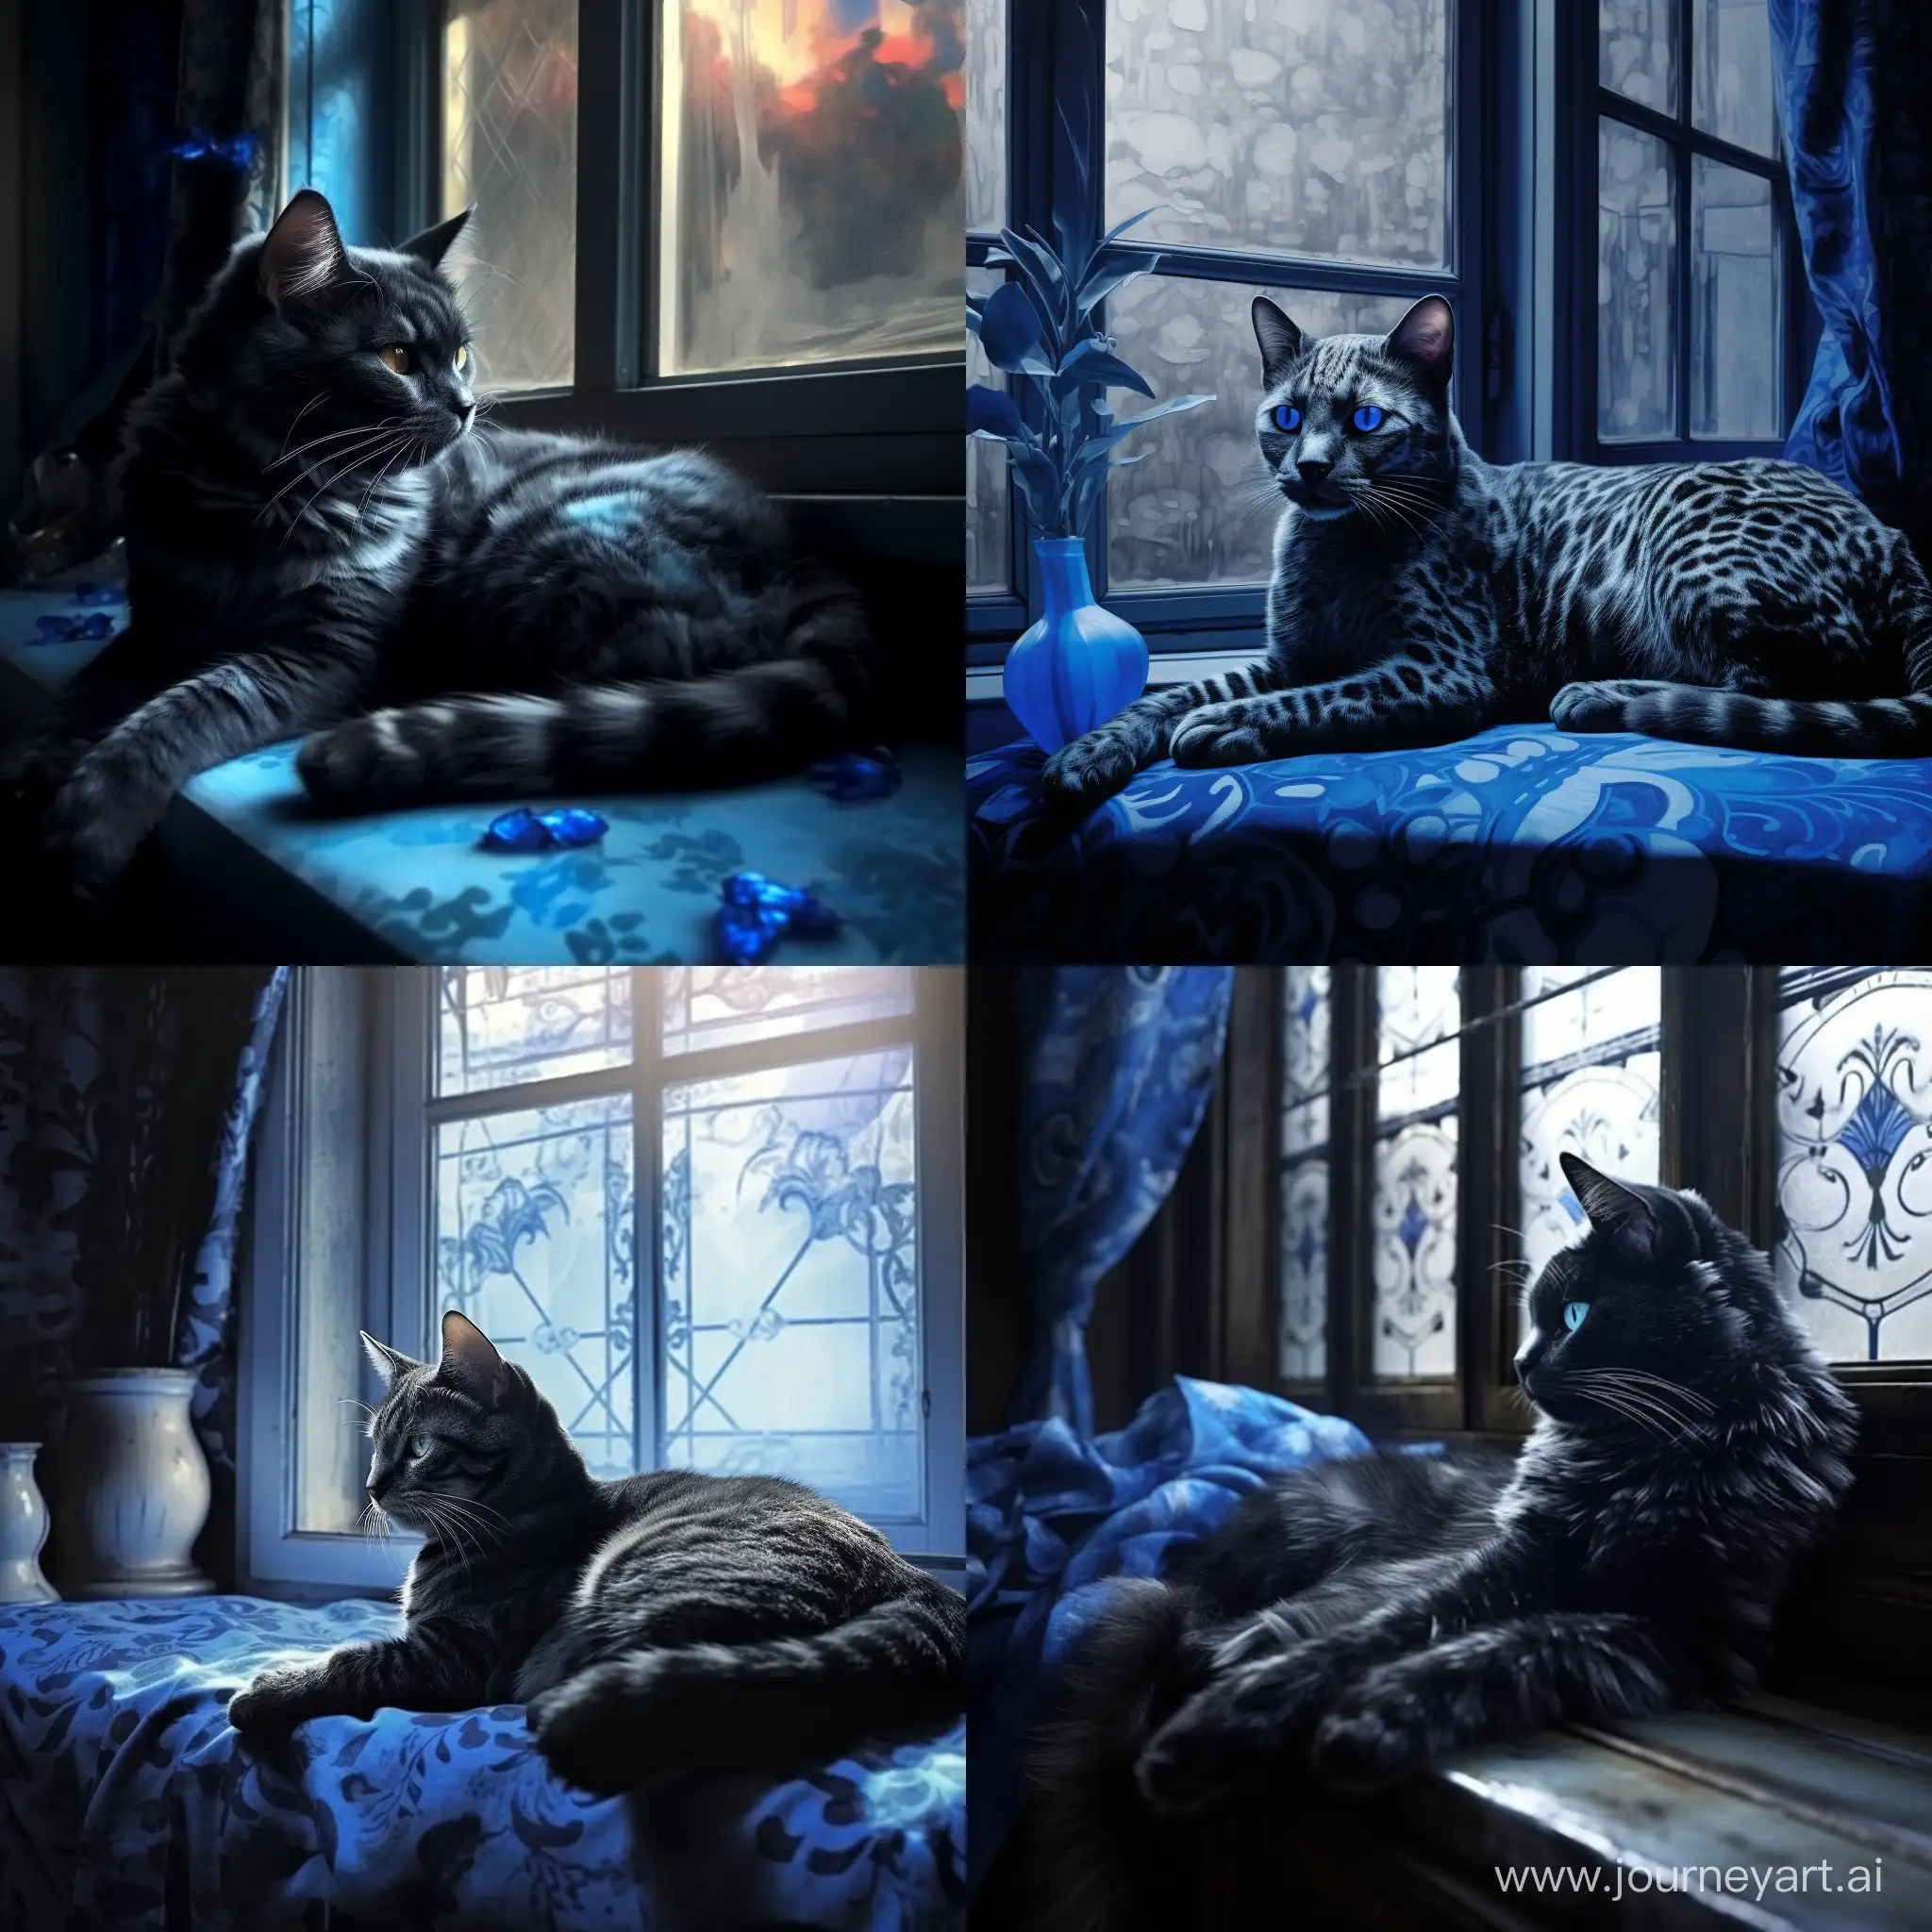 Action, голубая кошка с черными узорами лениво разлеглась на фоне окна, мягкий свет проникает через окна отбрасывая блики на кошку